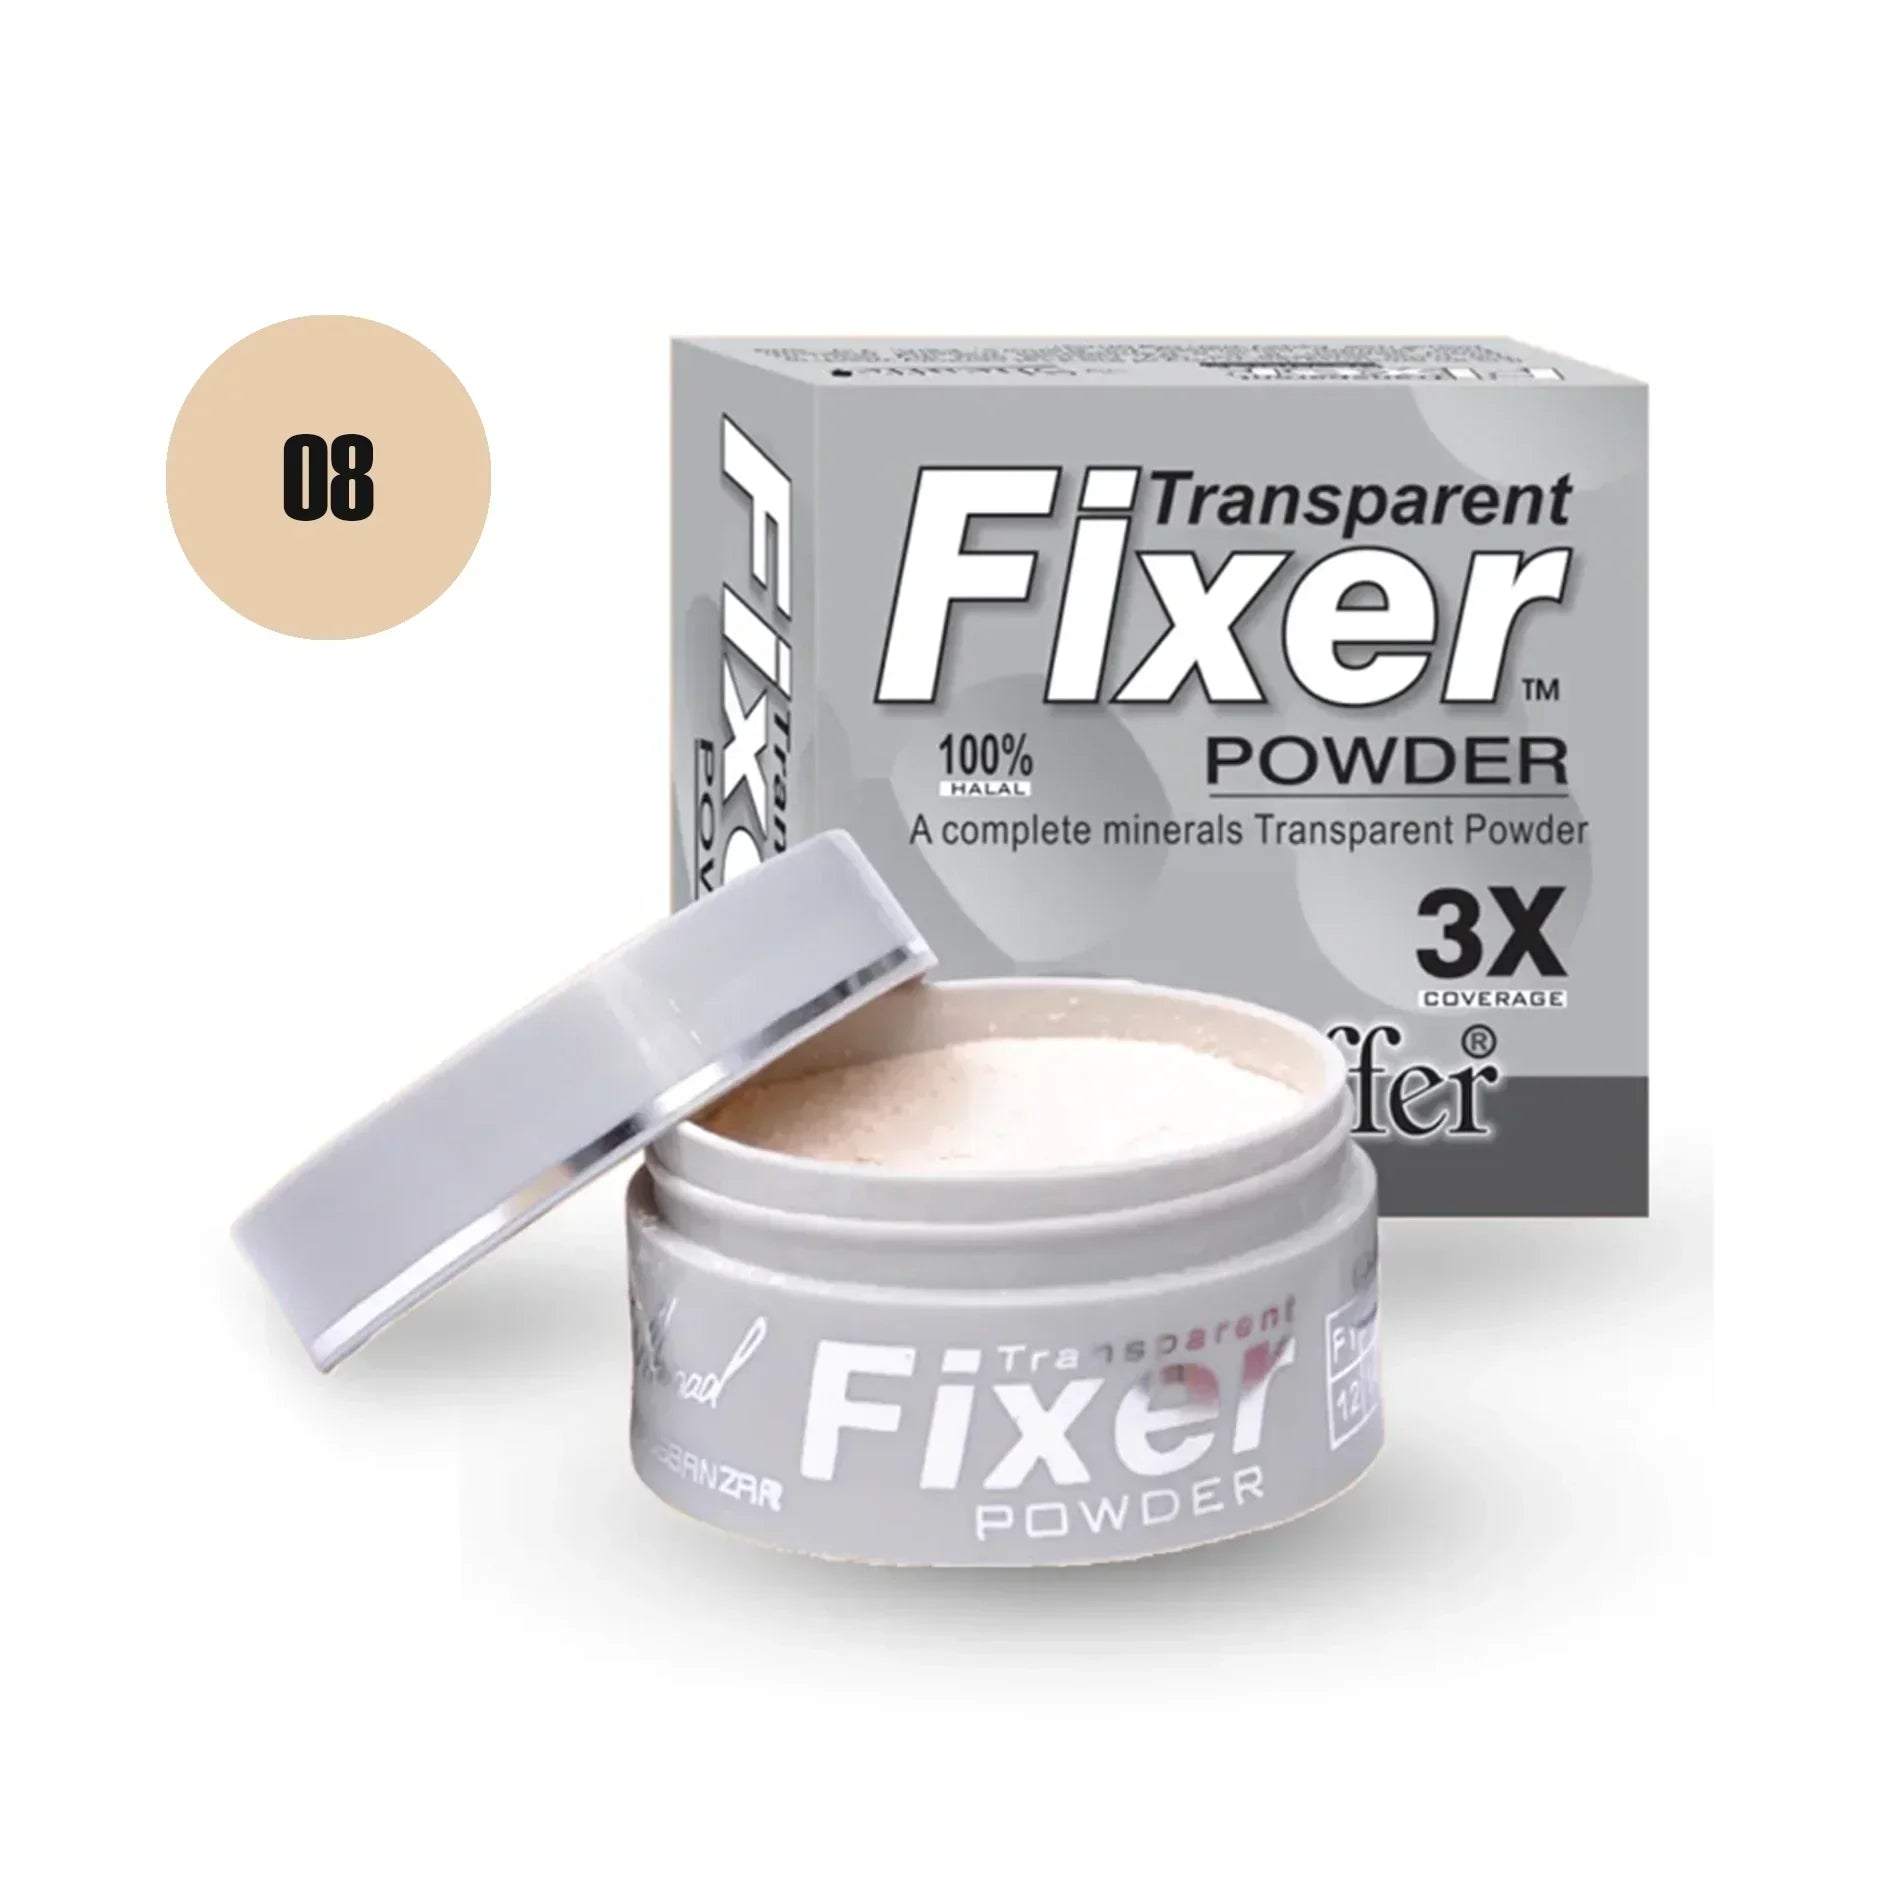 Sheaffer Transparent Fixer Powder Shade No 10 - Retailershop - Online Shopping Center